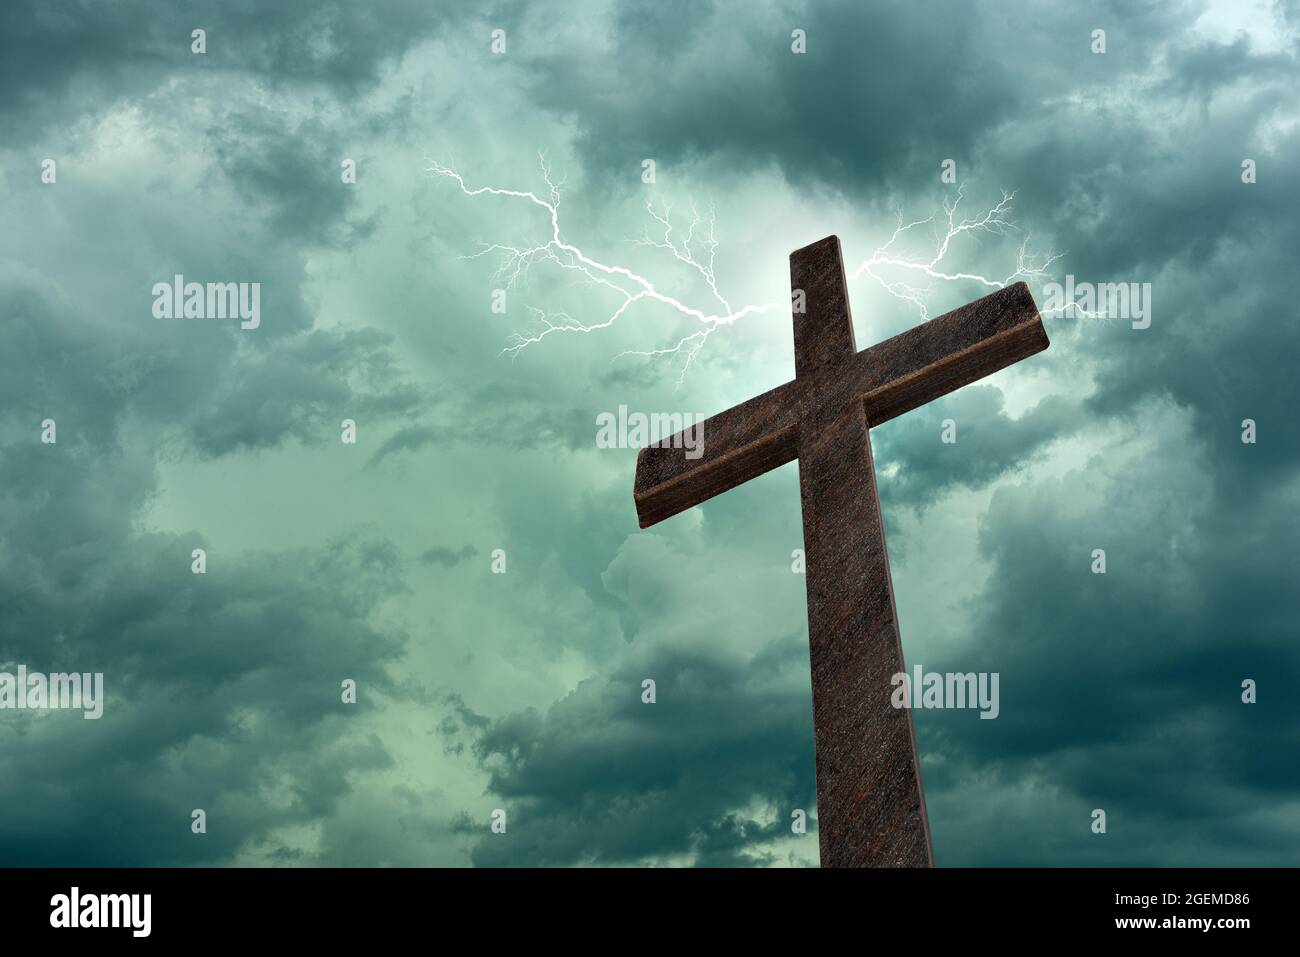 Image dramatique montrant une croix religieuse encadrée contre un ciel de foudre, de lumière vive et de rayons du soleil, montrant la venue du Seigneur. Copier sp Banque D'Images